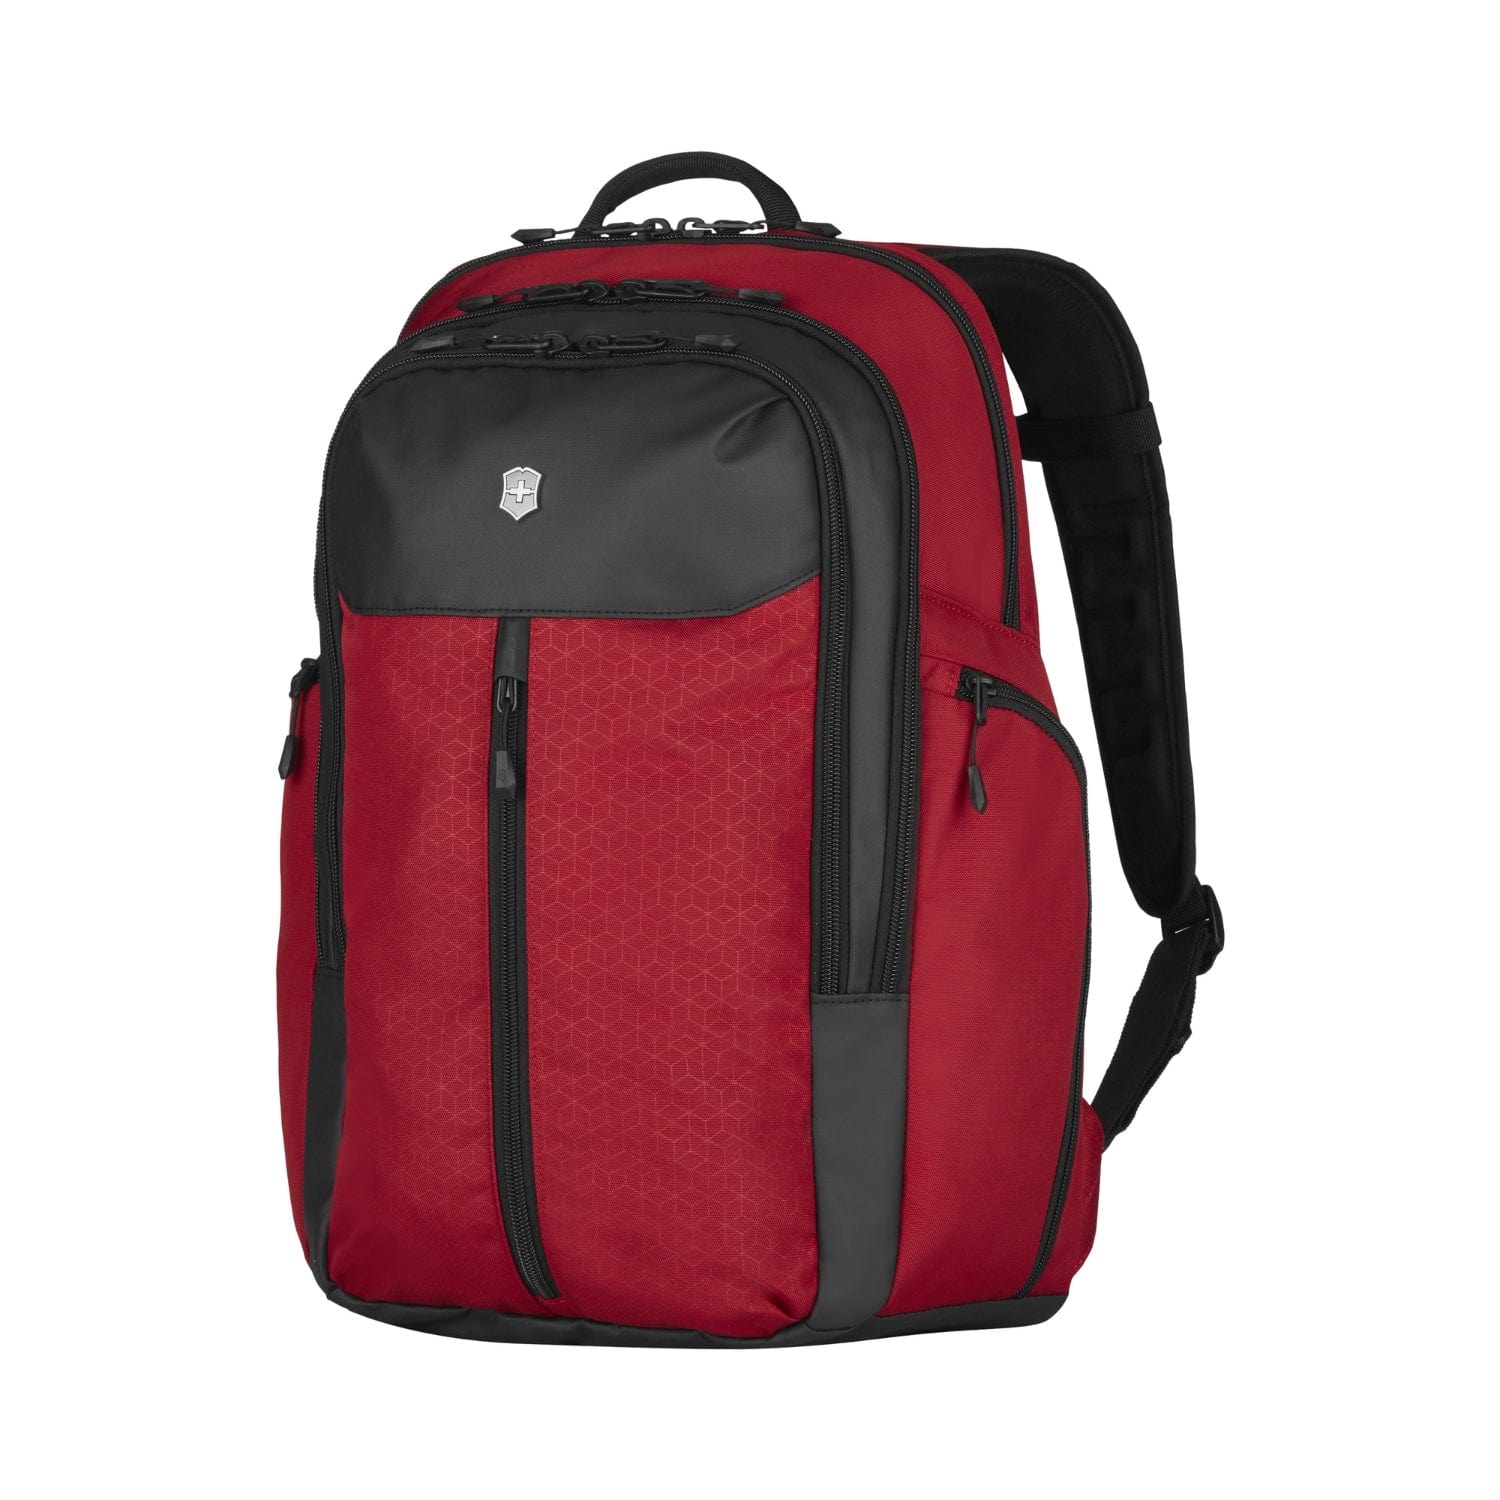 Victorinox Altmont Original Vertical-Zip 17 inch Laptop Backpack Black - 606730